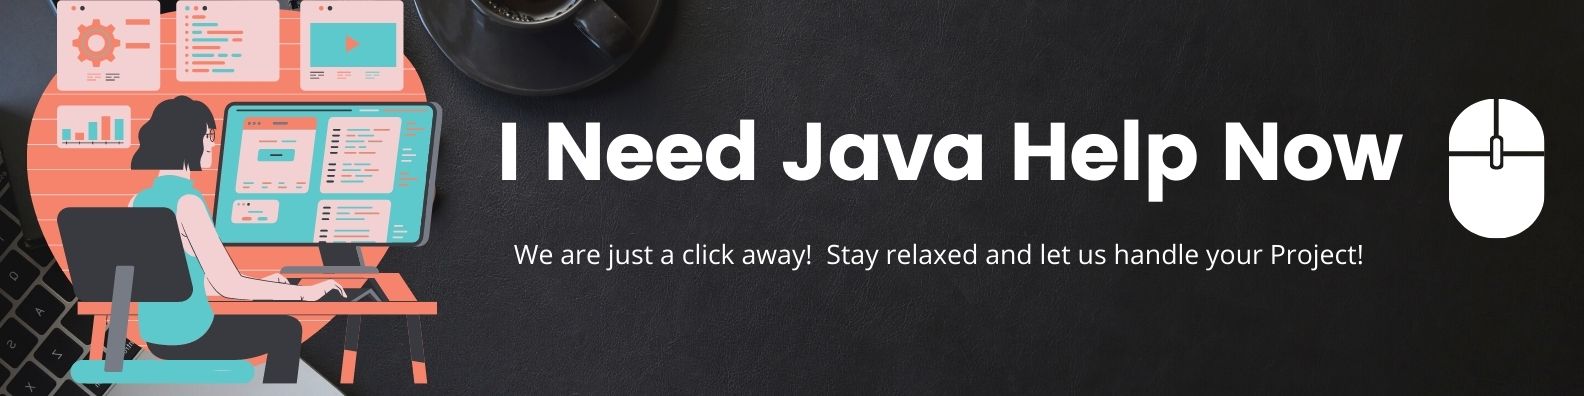 Java Help